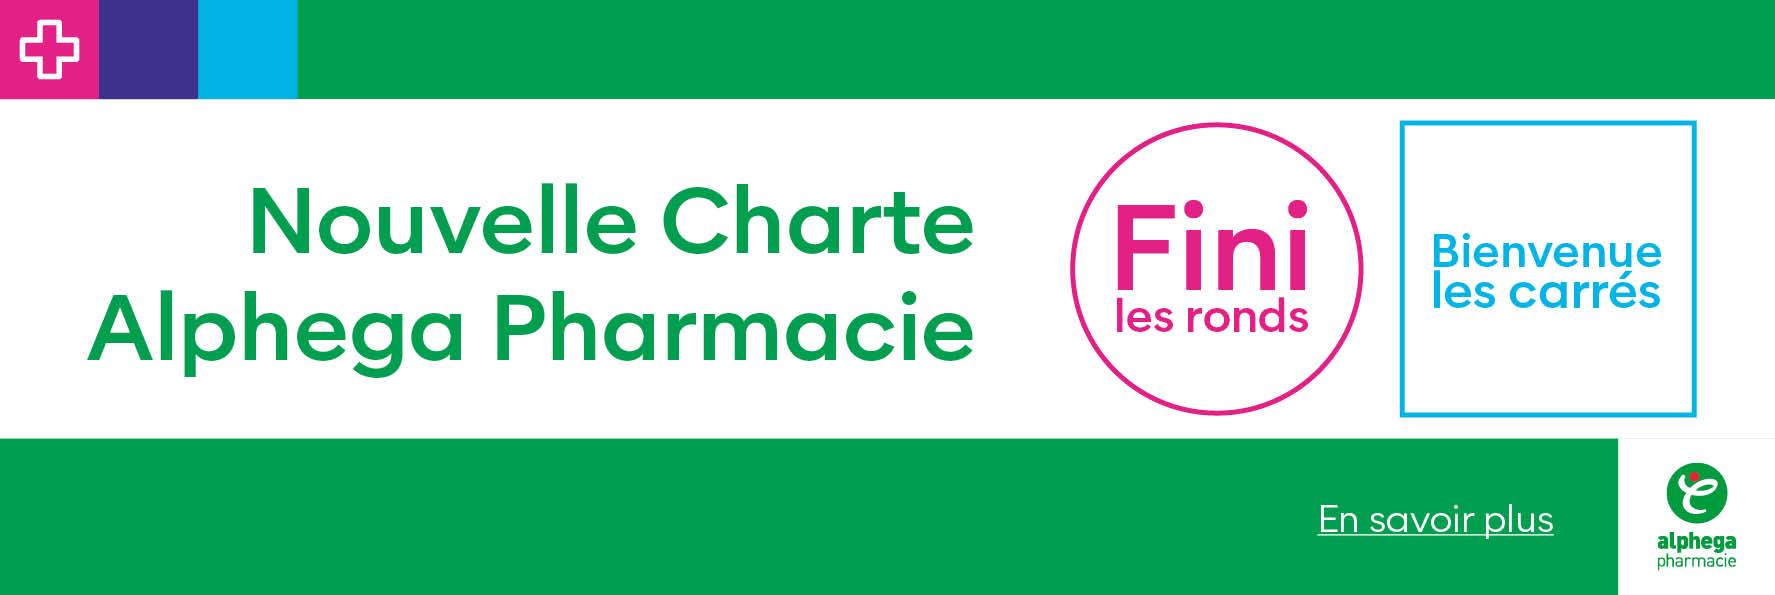 Nouvelle charte Aphega Pharmacie